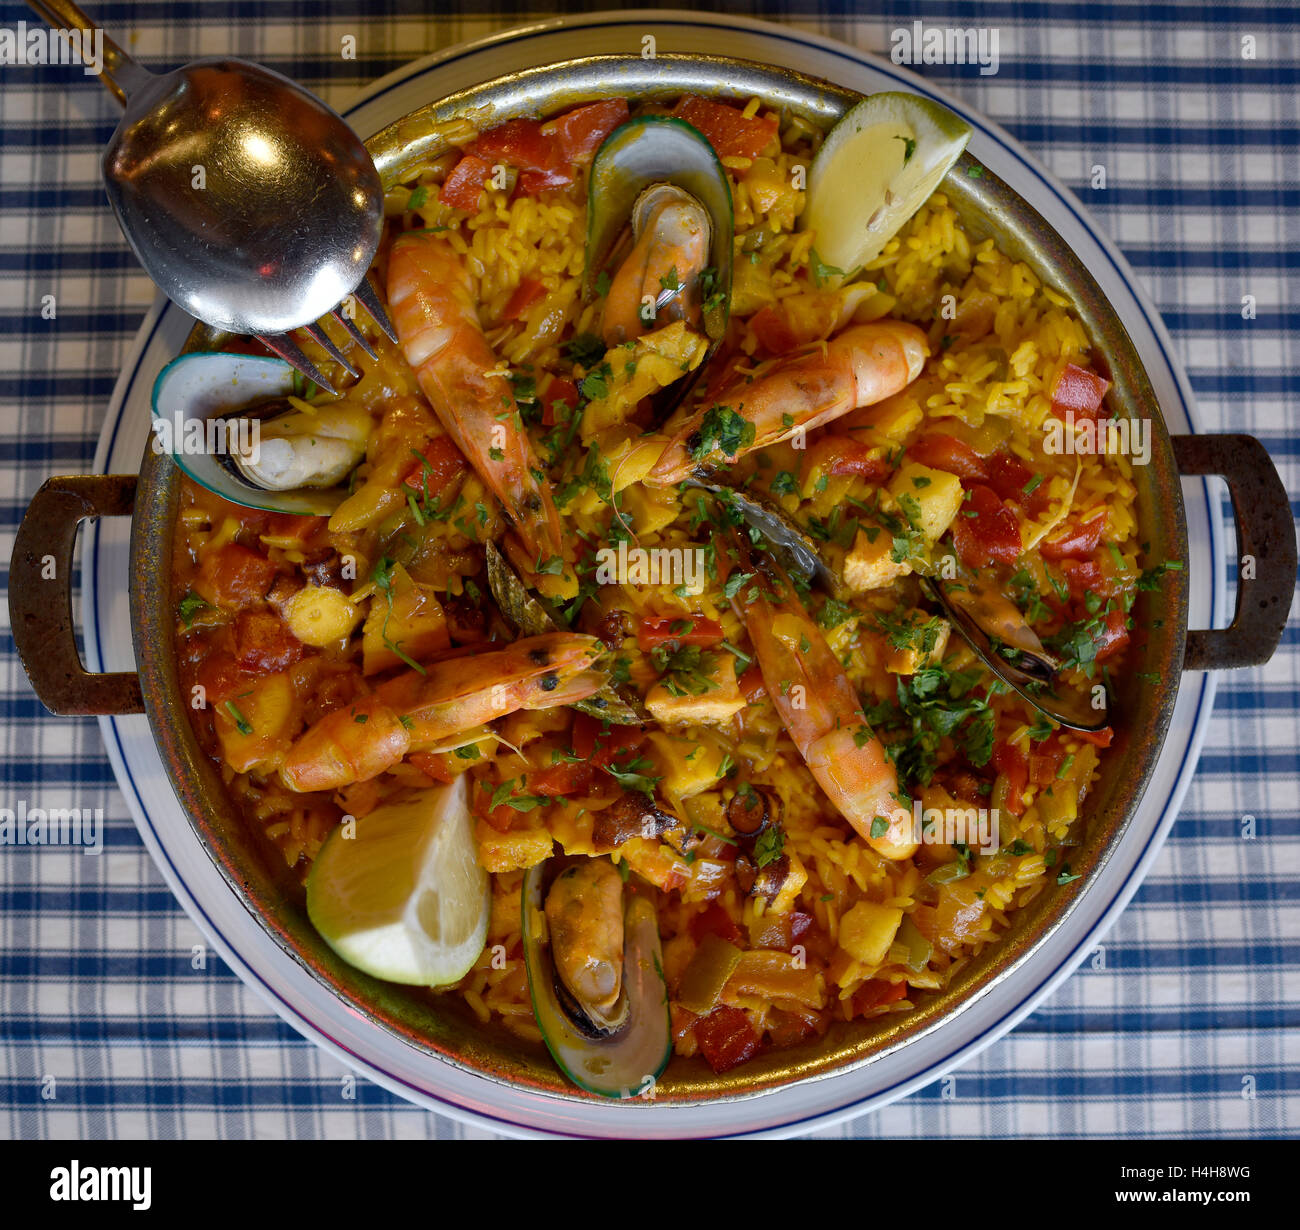 Spanische Küche, Meeresfrüchte Paella im Topf, Teneriffa, Kanarische Inseln, Spanien Stockfoto